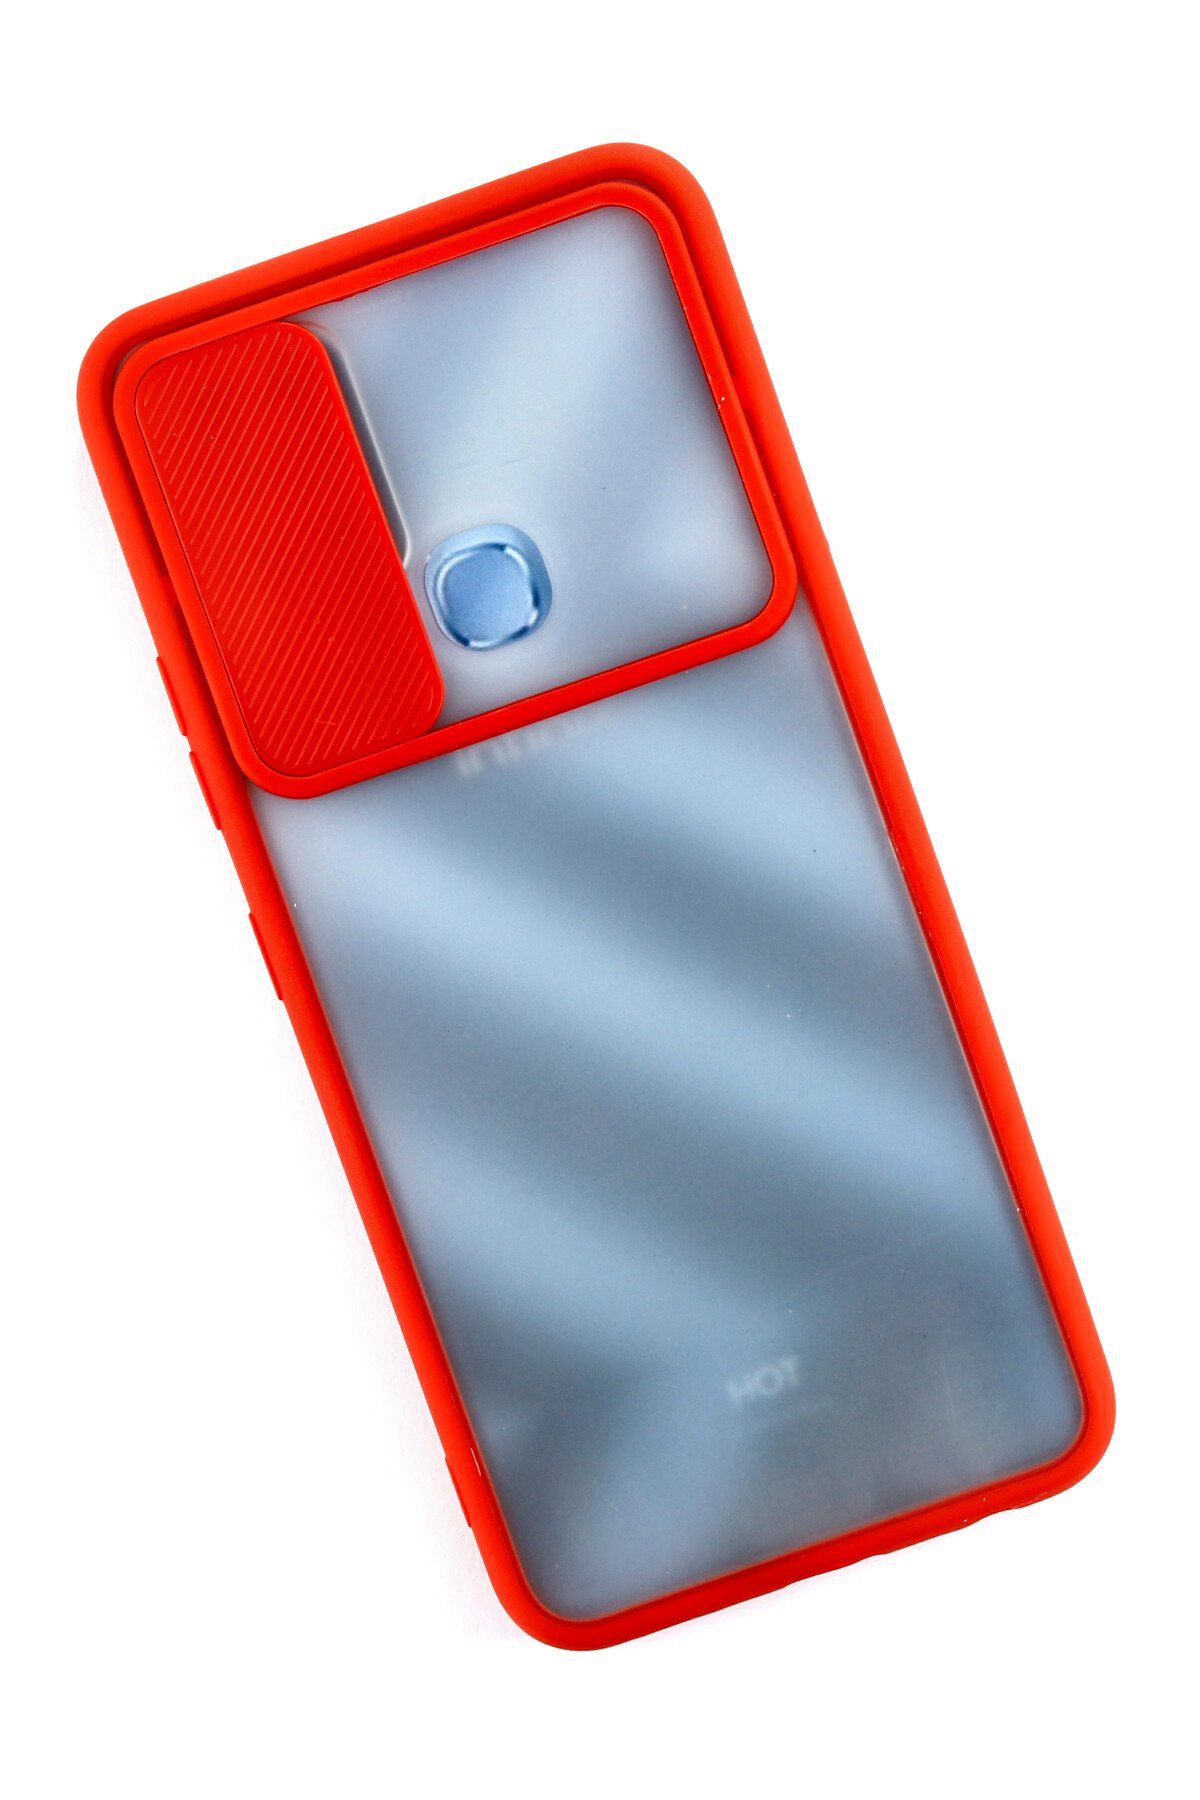 Newface İnfinix Hot 10T Kılıf Palm Buzlu Kamera Sürgülü Silikon - Kırmızı